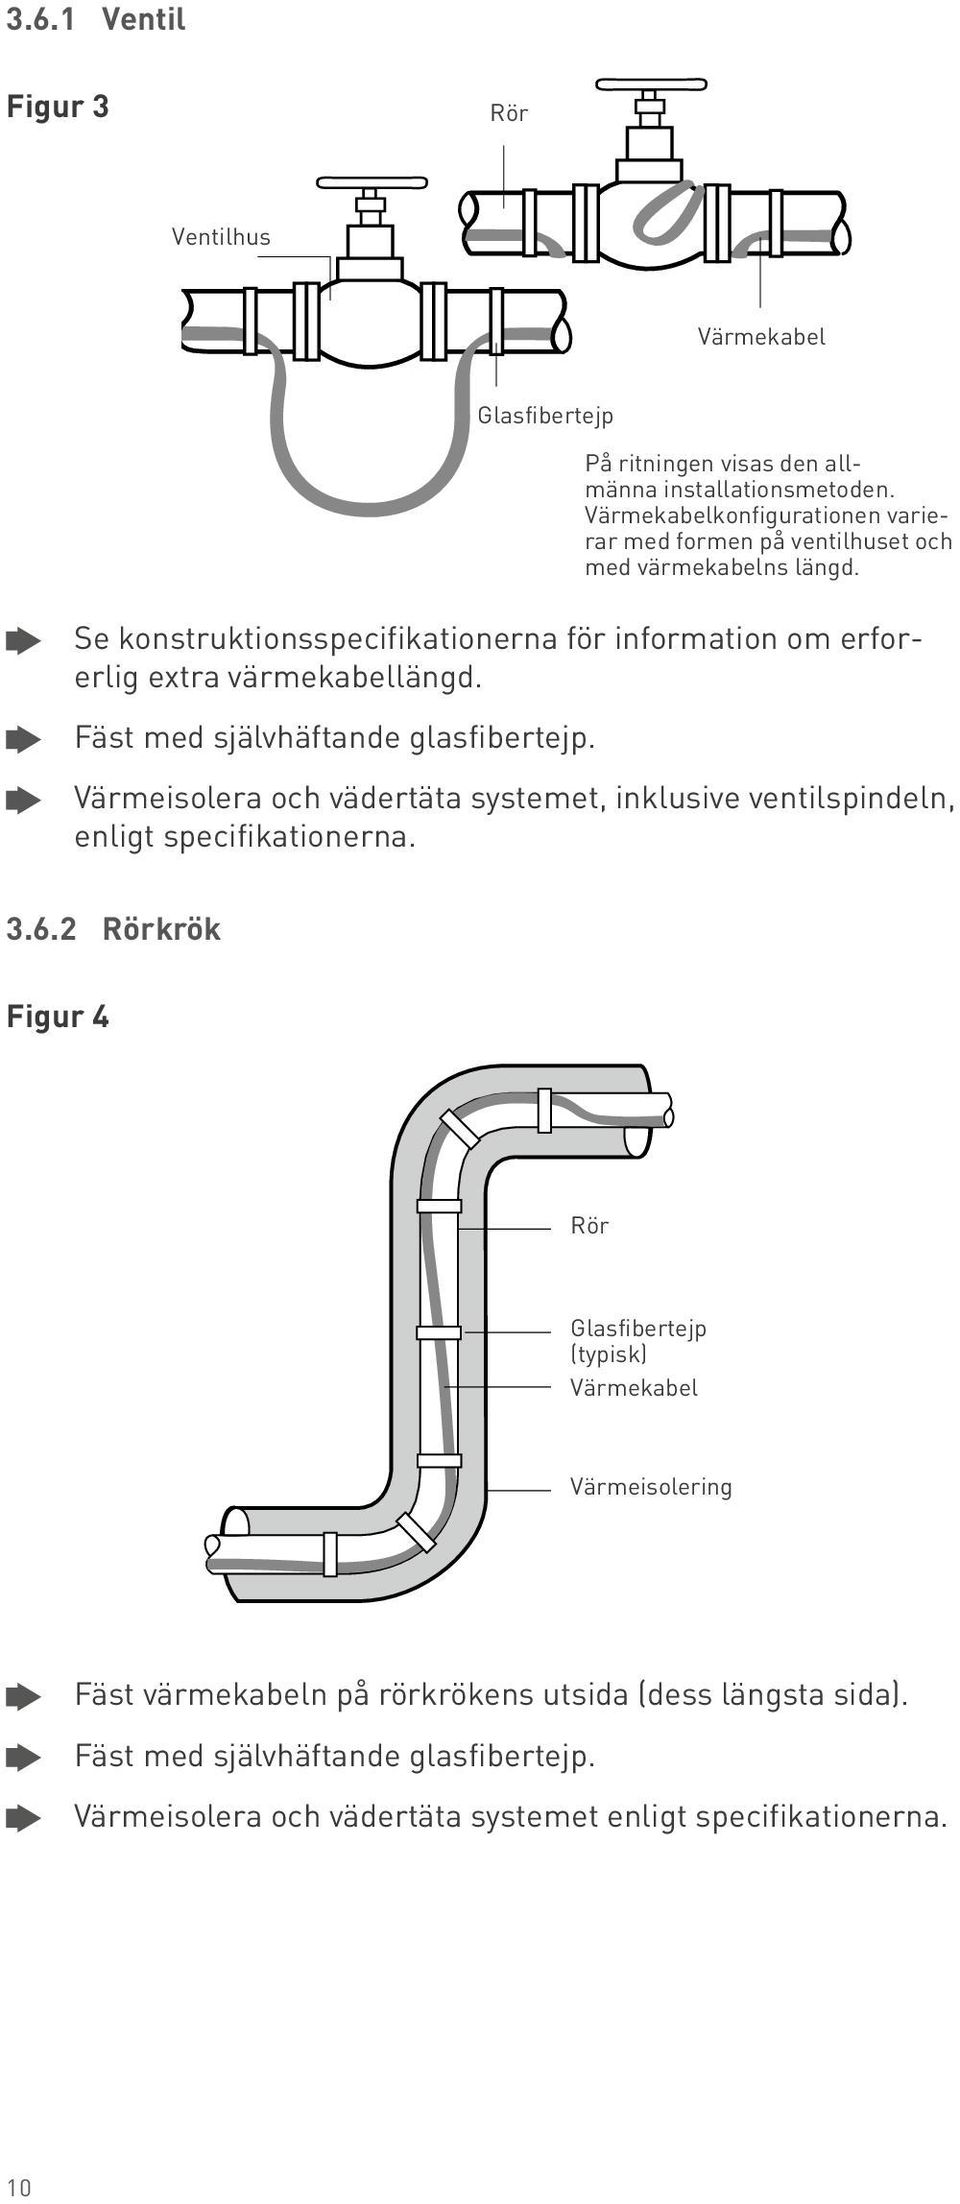 Värmekabelkonfigurationen varierar med formen på ventilhuset och med värmekabelns längd.